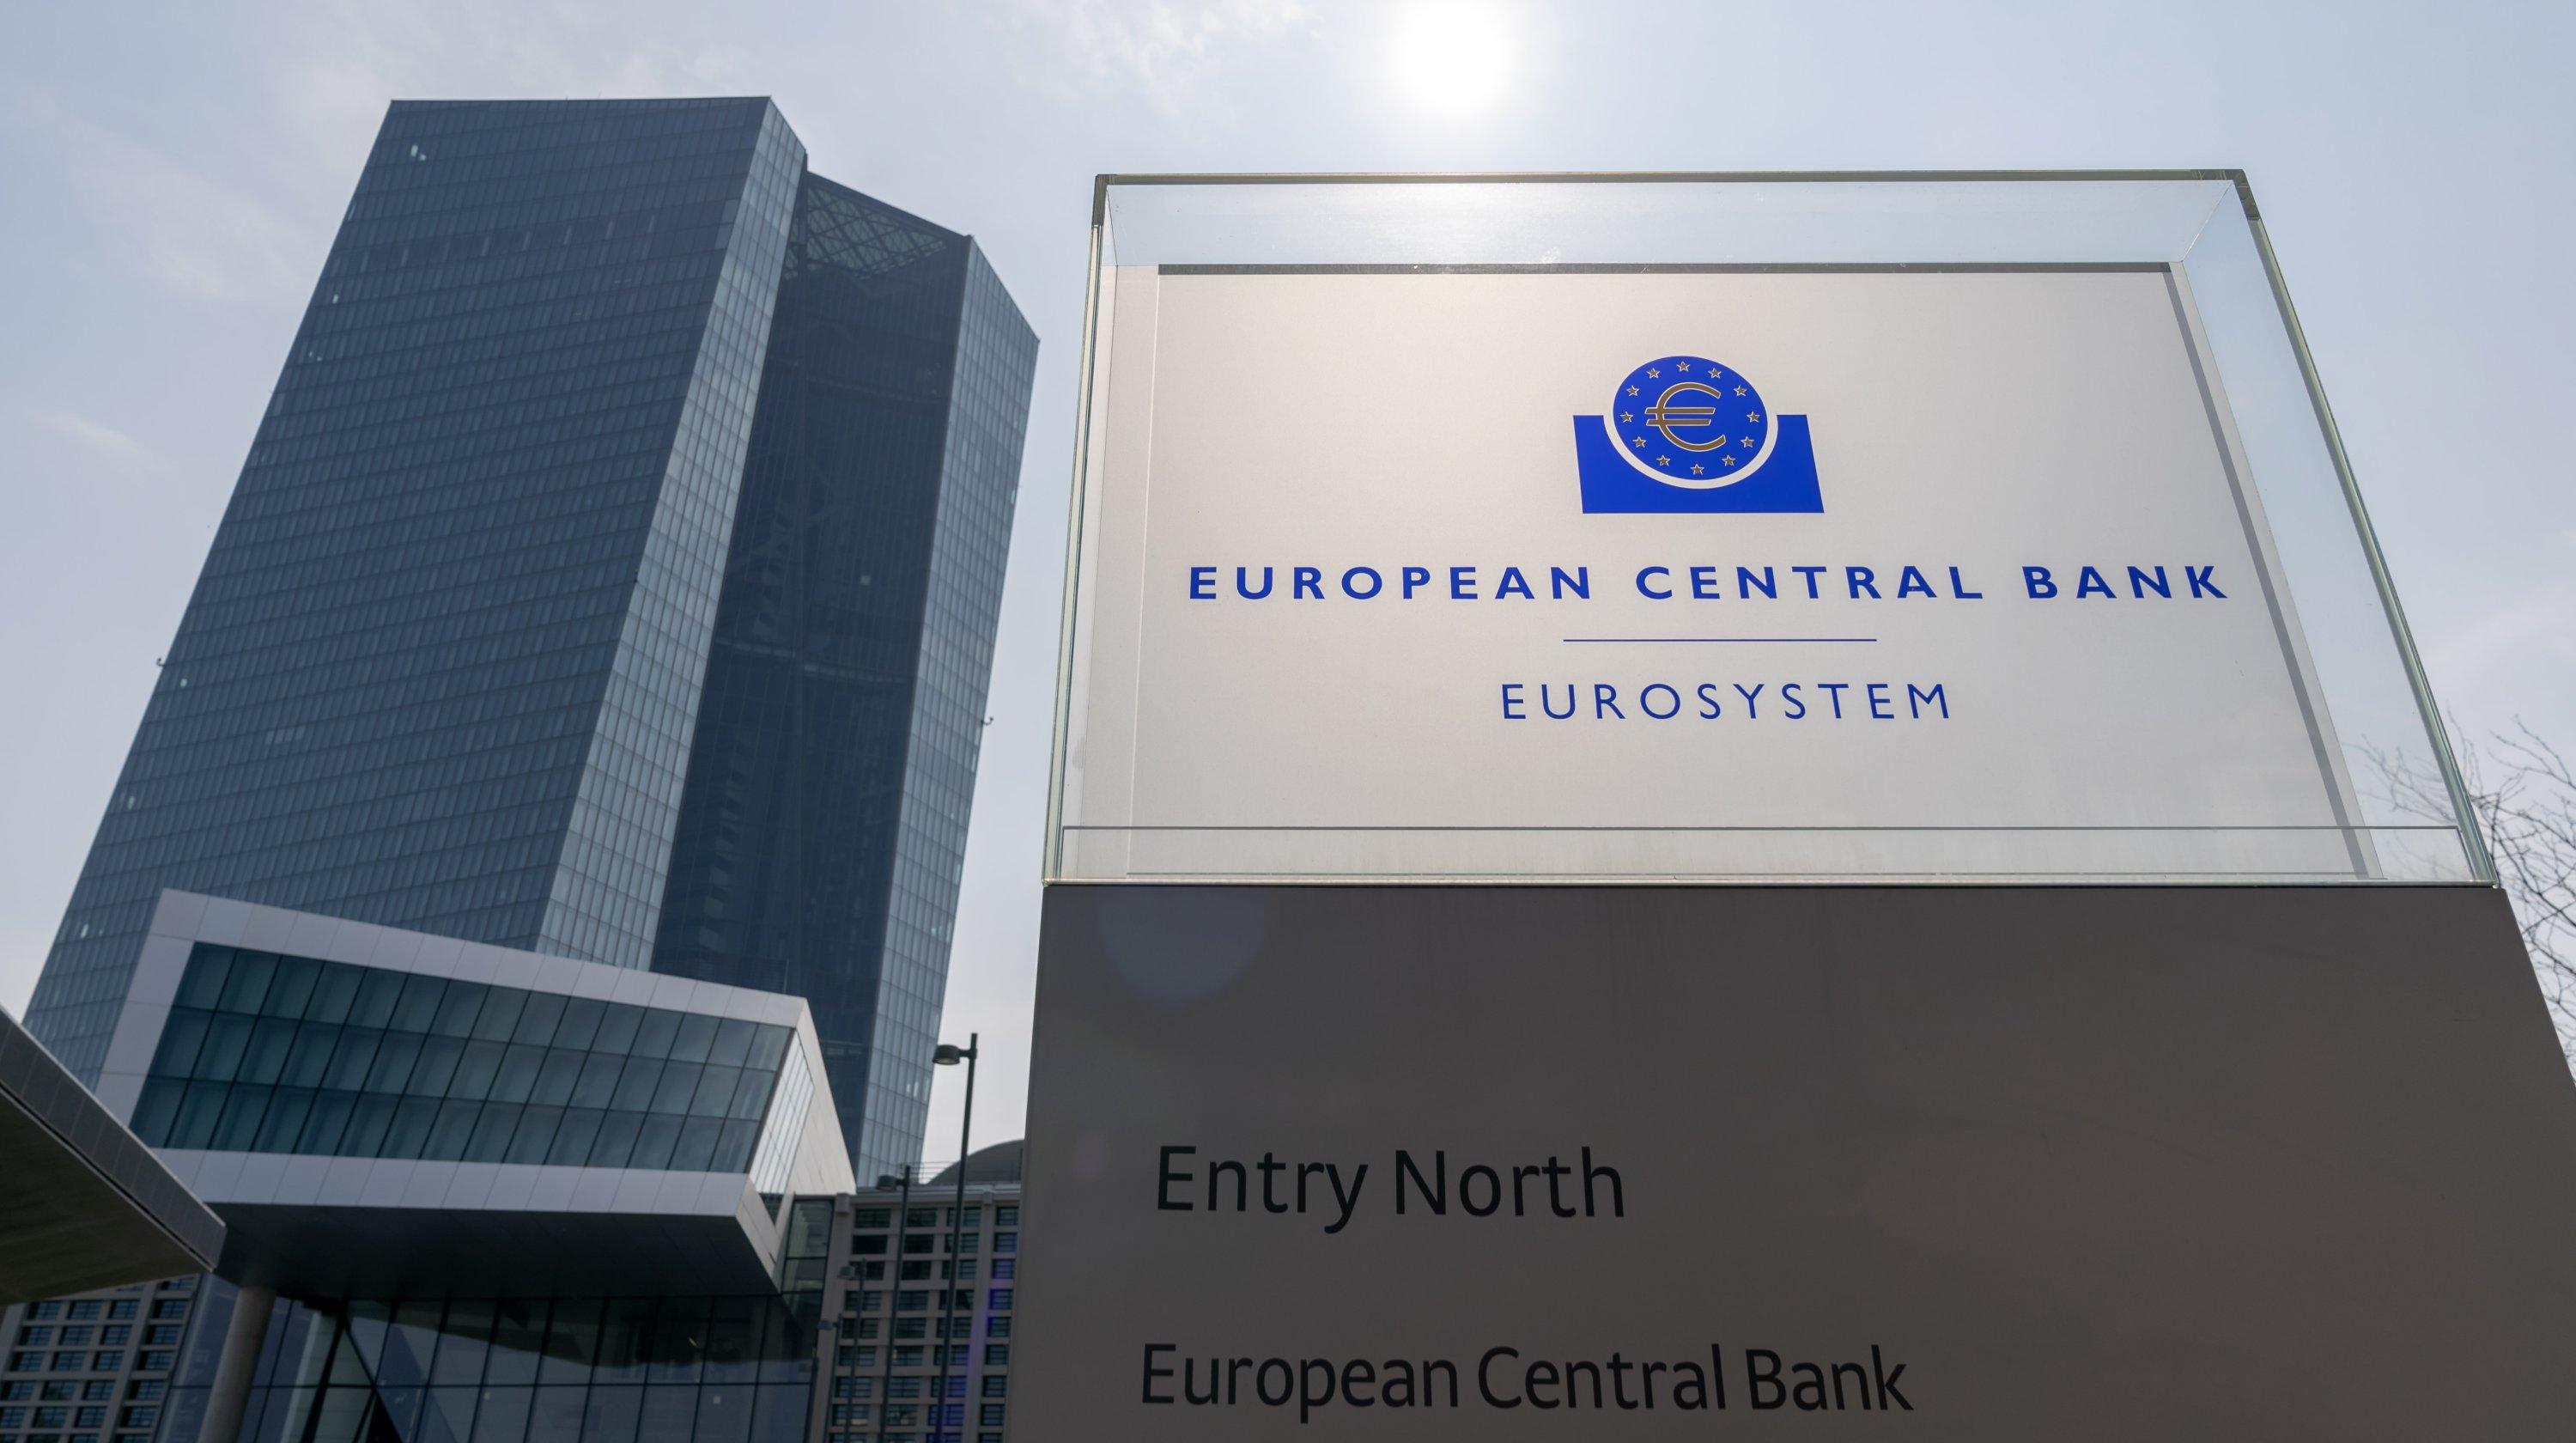 Đừng để tiếng ồn làm giảm đi niềm tin vào ECB